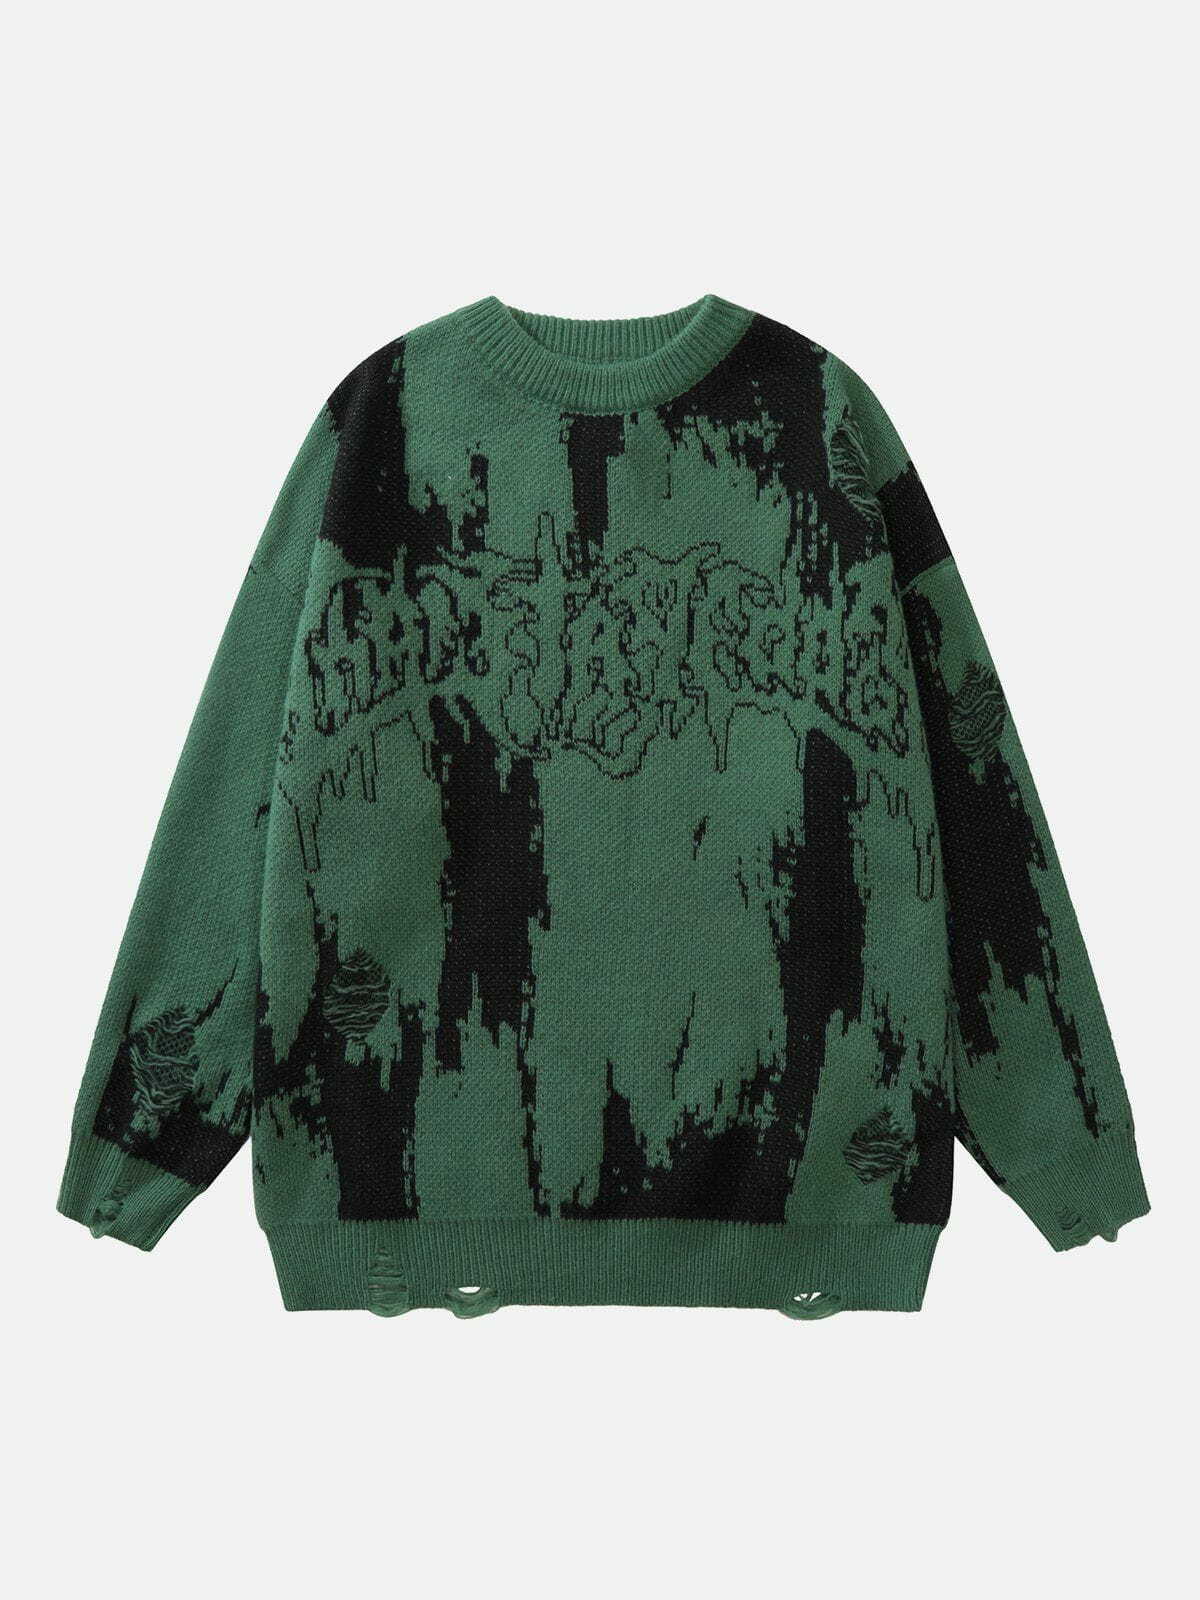 trendy tie dye letter sweater edgy & vibrant streetwear 4439